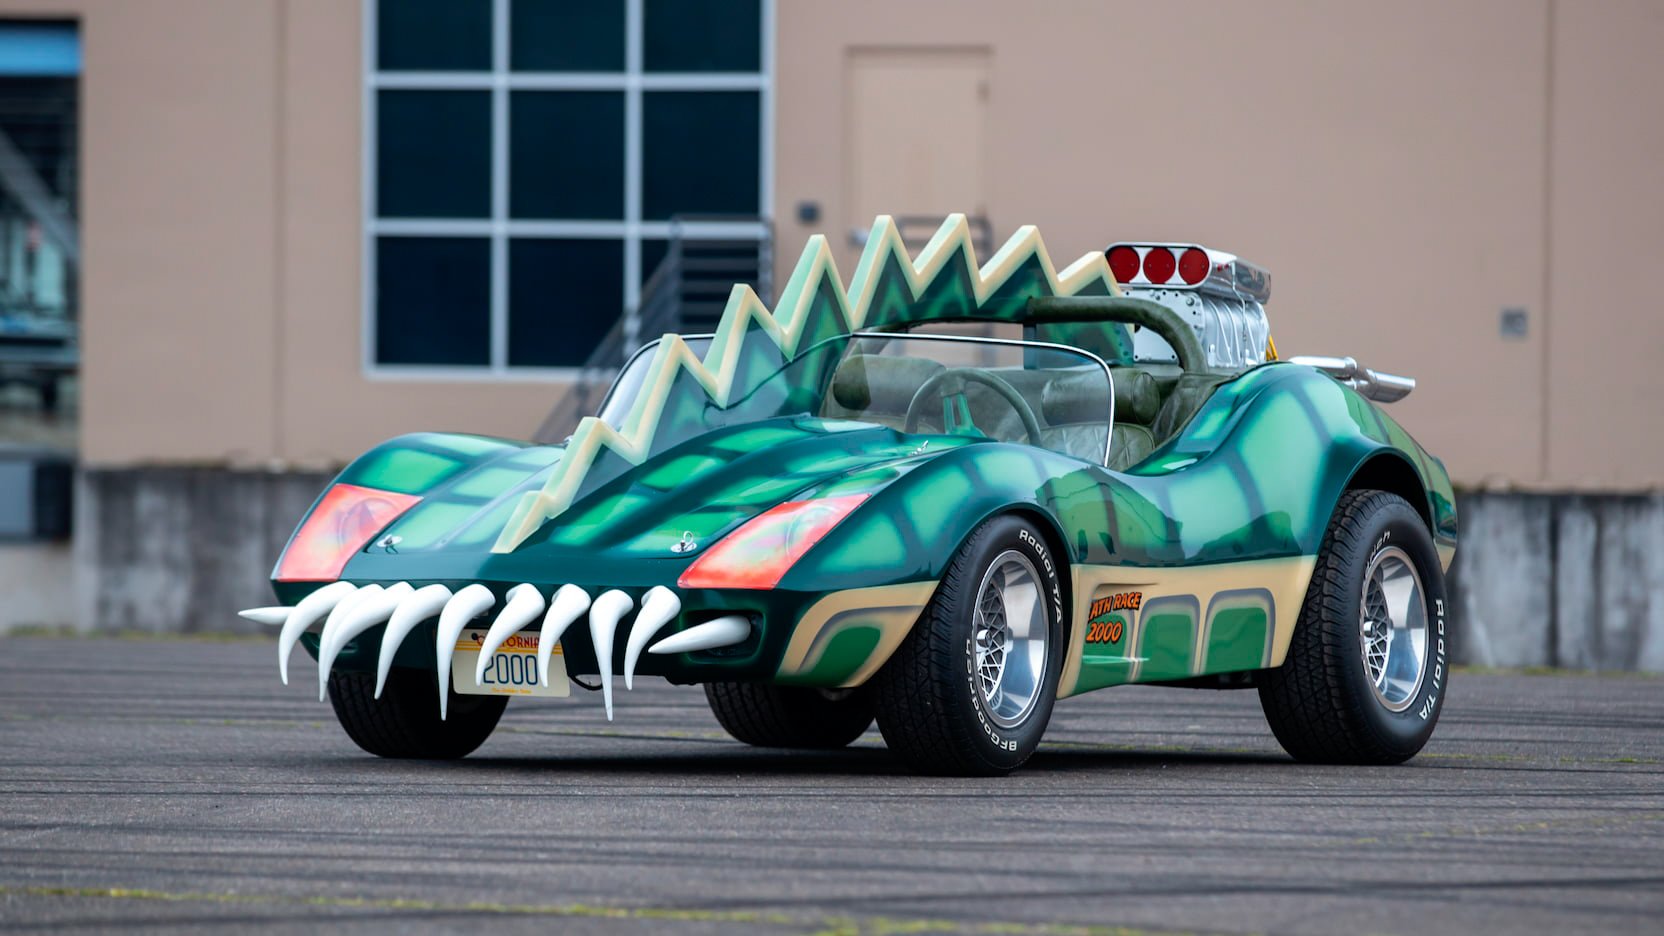 David Carradine’s Alligator Car From “Death Race 2000” via @Silodrome